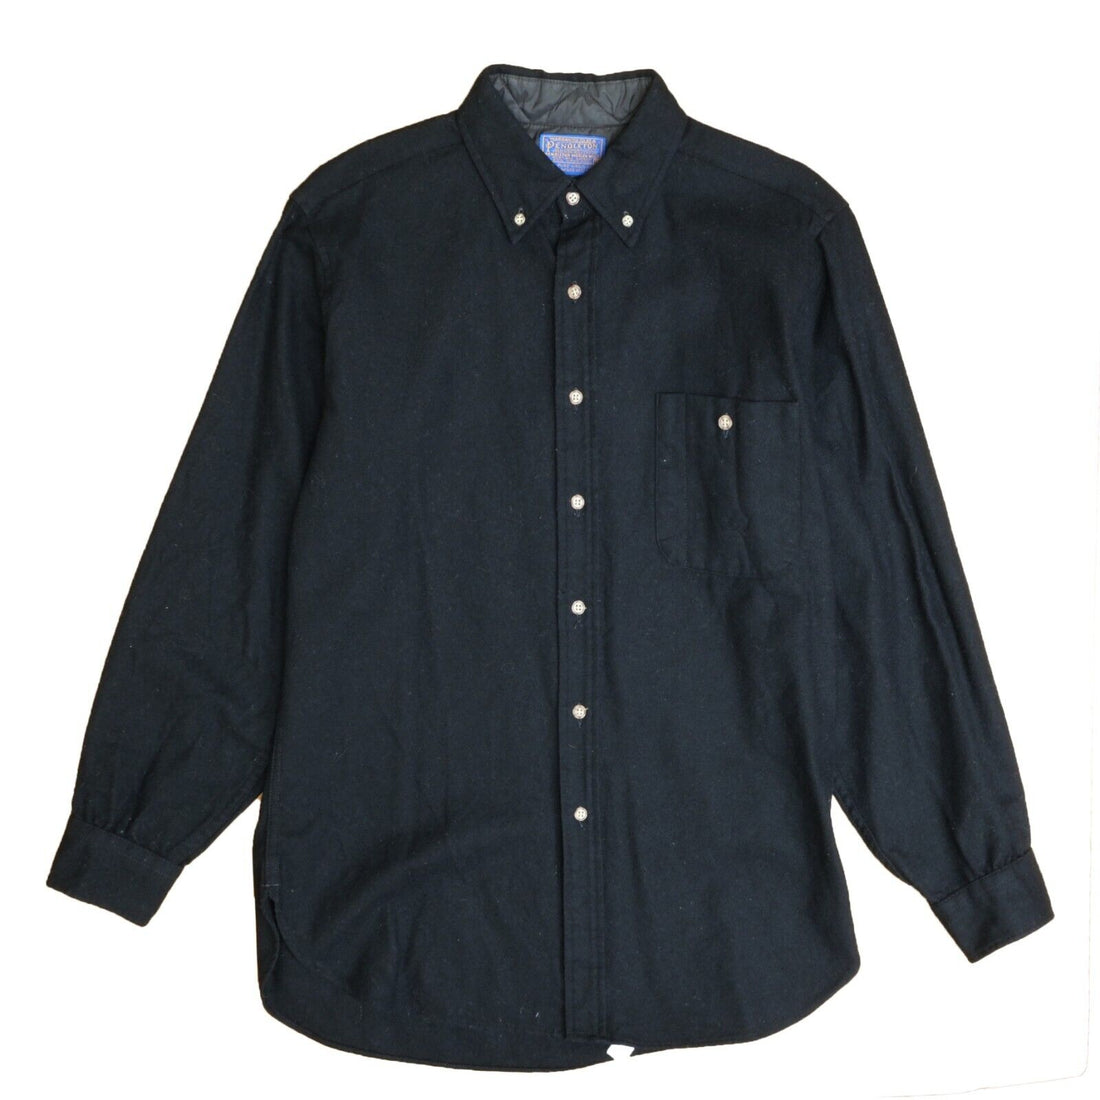 Vintage Pendleton Wool Button Up Shirt Size Medium Black